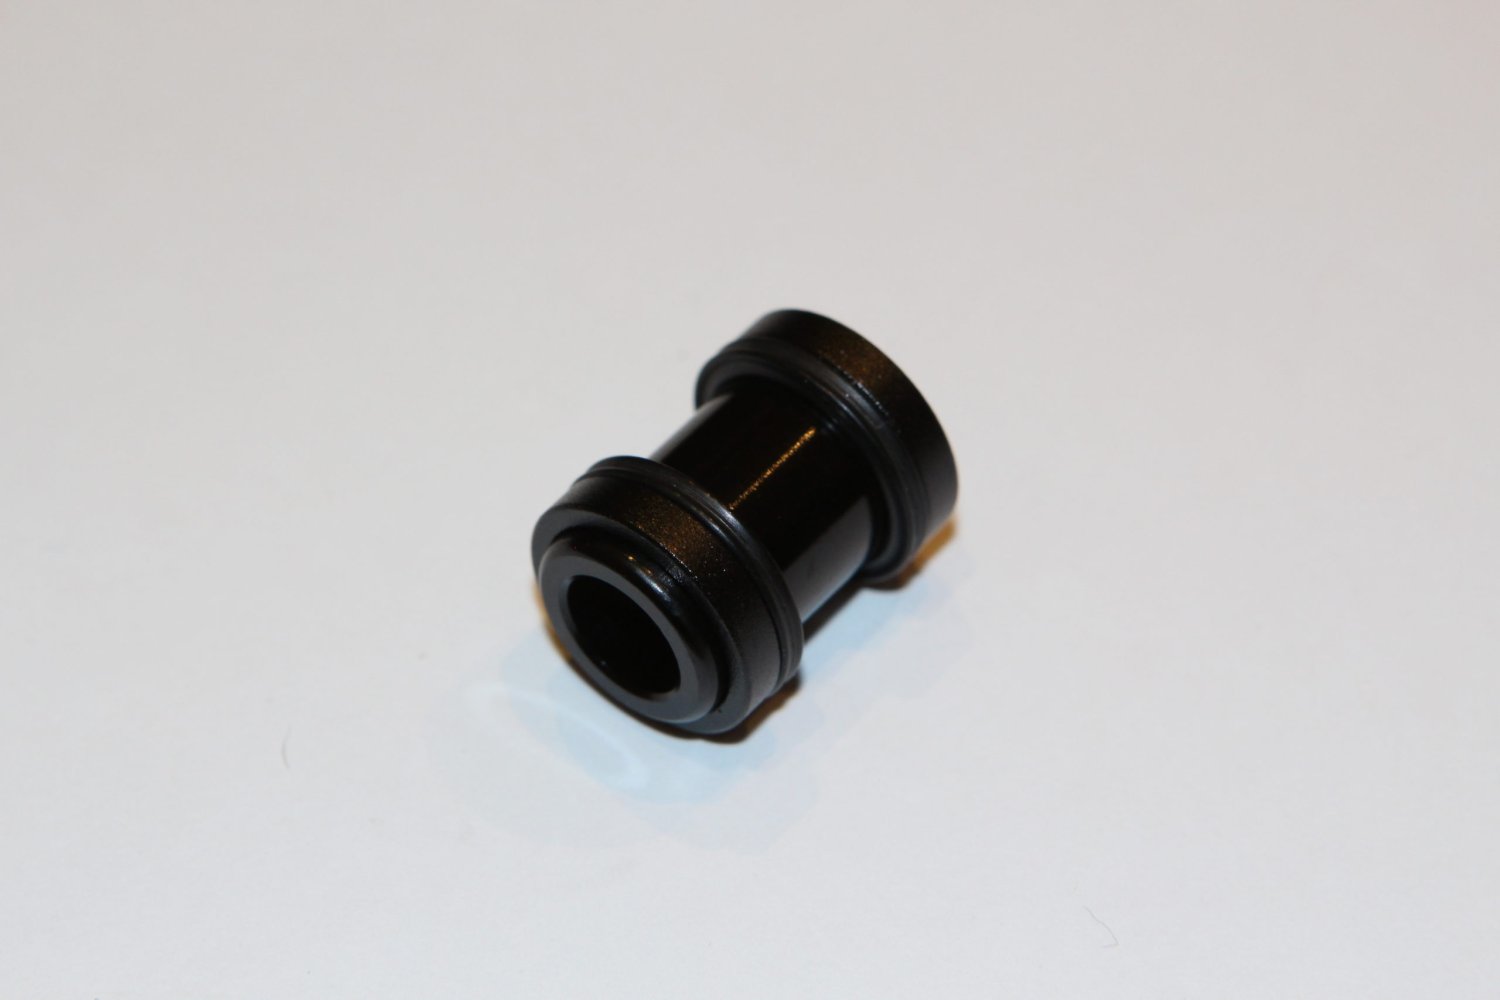 Втулка заднего амортизатора WSS, монтажная, трехсоставная, для башинга 1/2 (12.7 мм), размер  21.8x